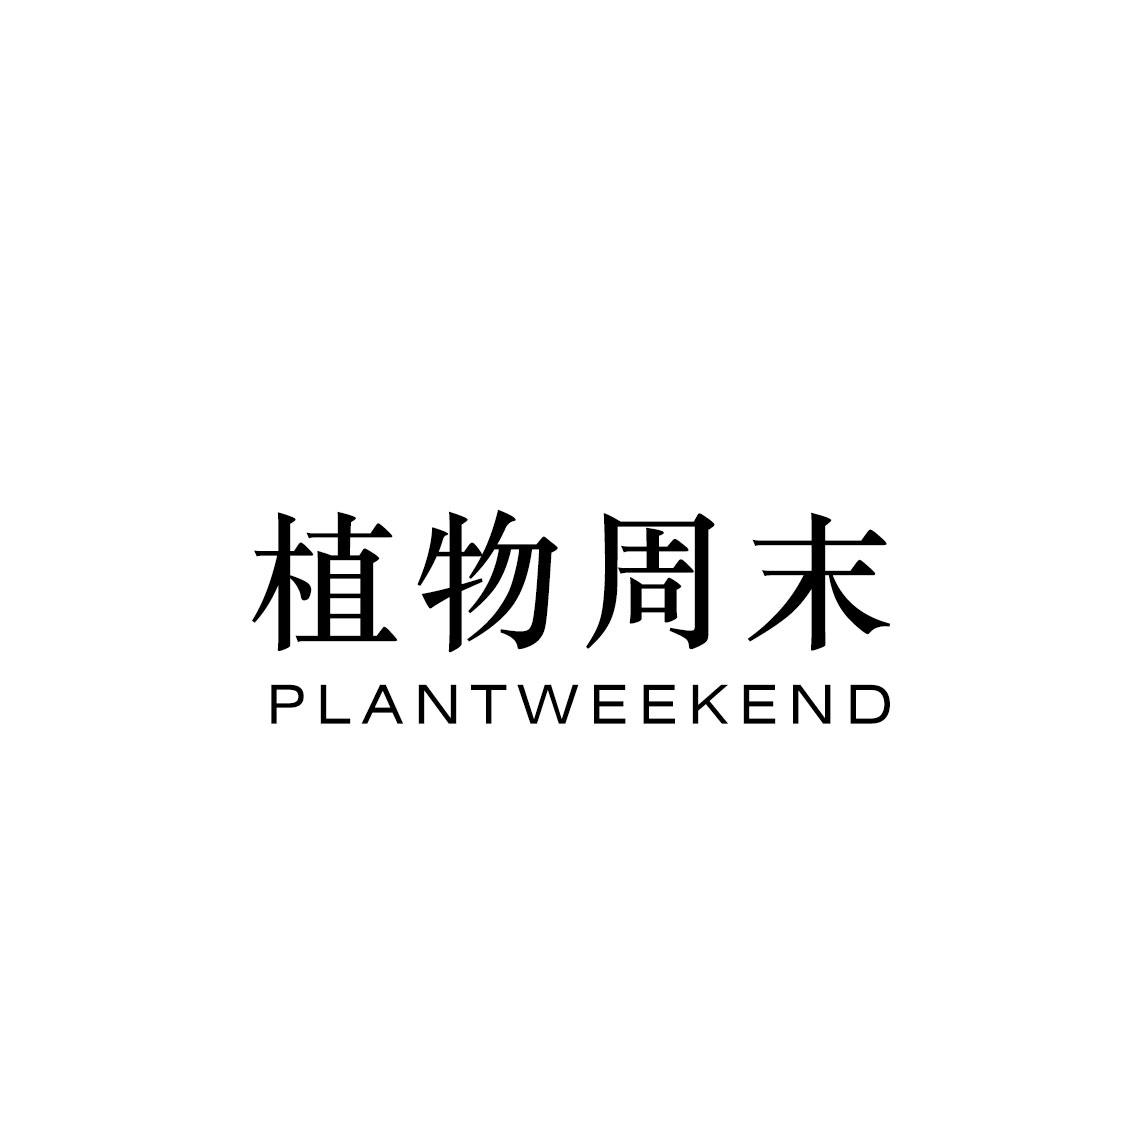 植物周末PLANTWEEKEND